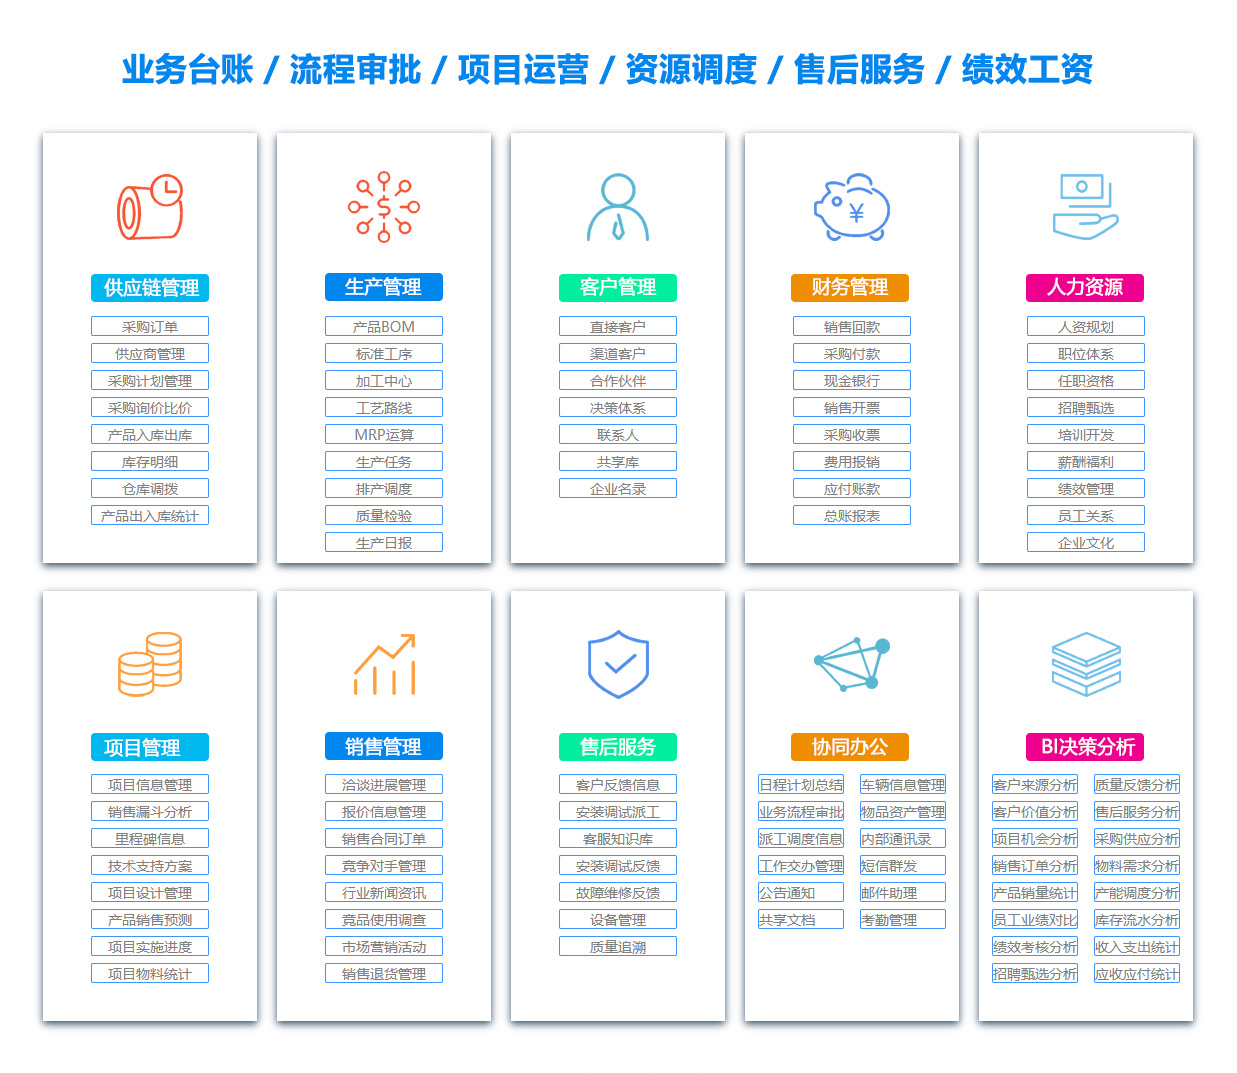 台州MIS:信息管理系统